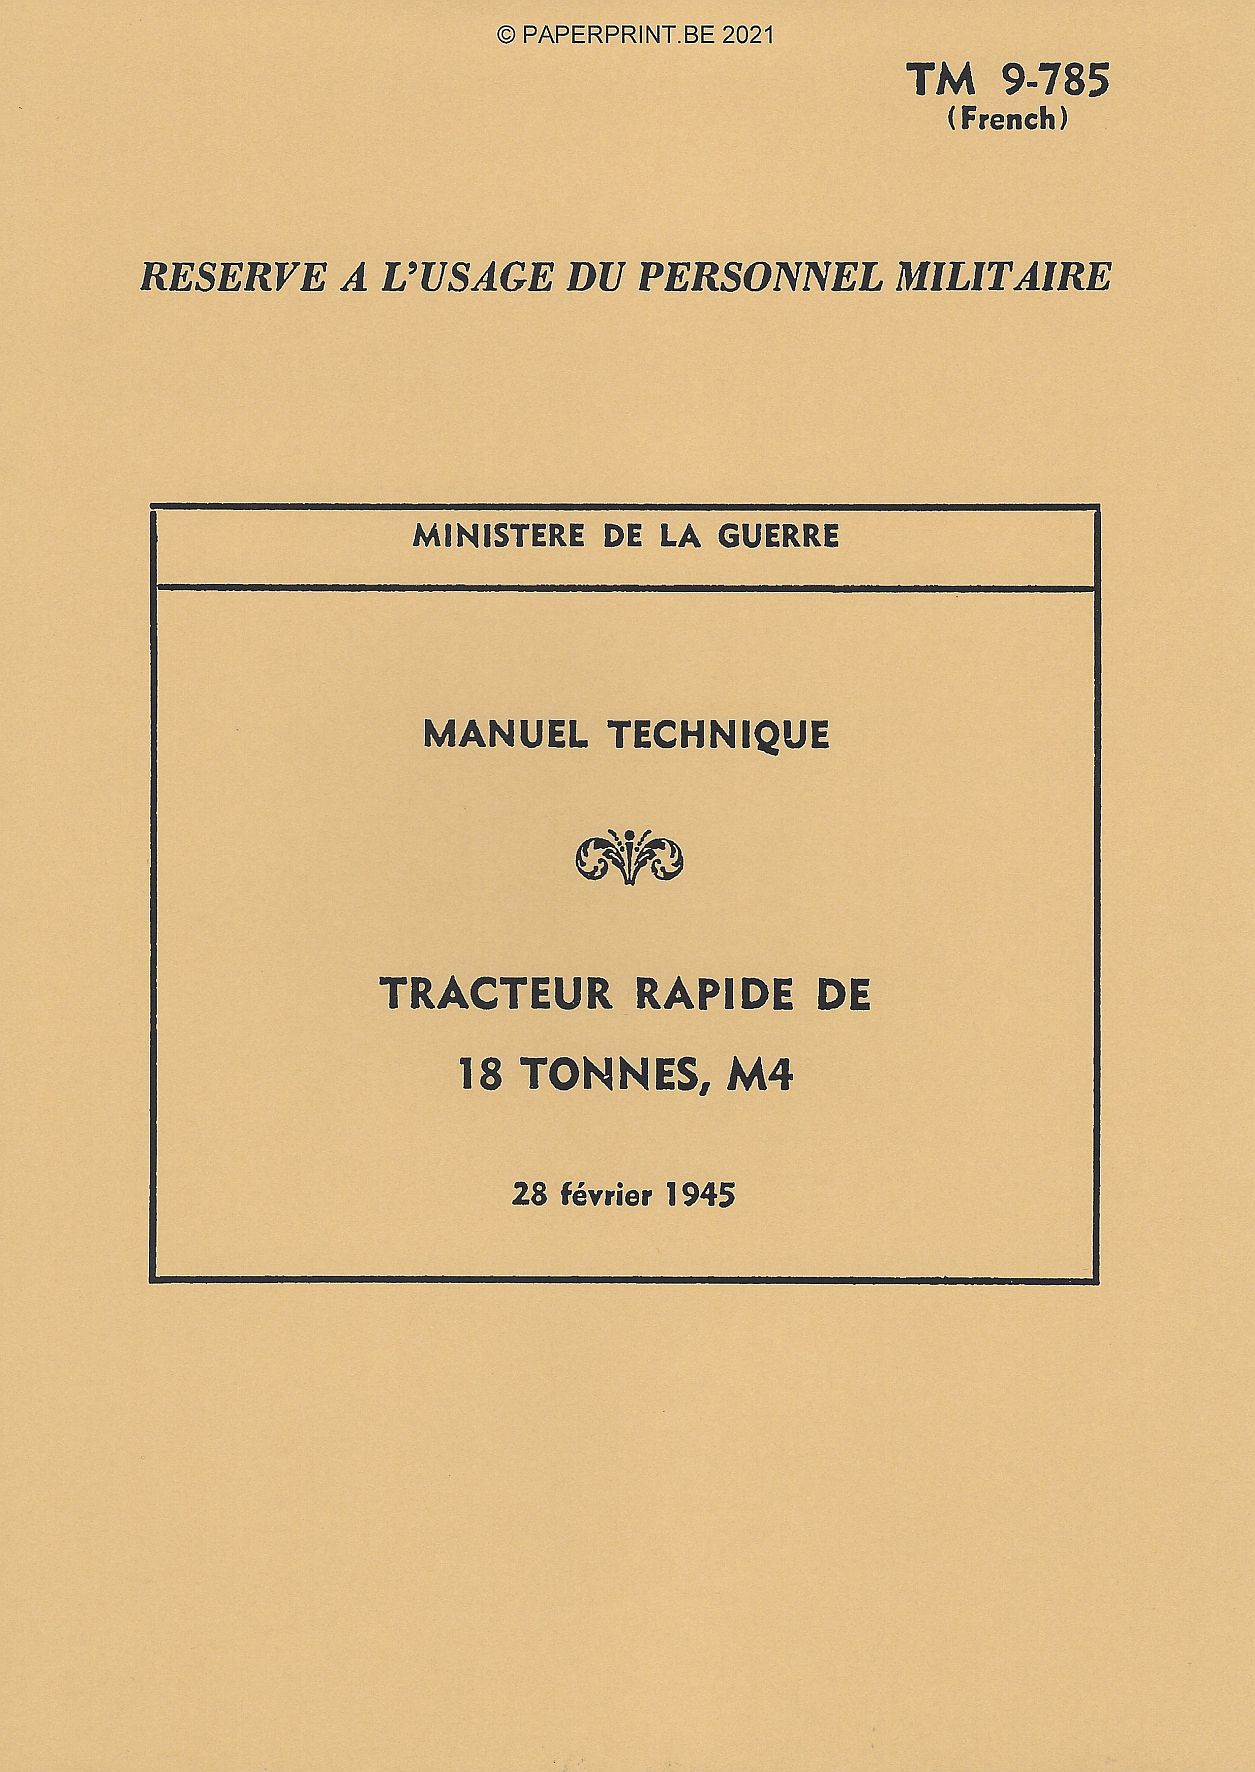 TM 9-785FR TRACTEUR RAPIDE DE 18 TONNES, M4